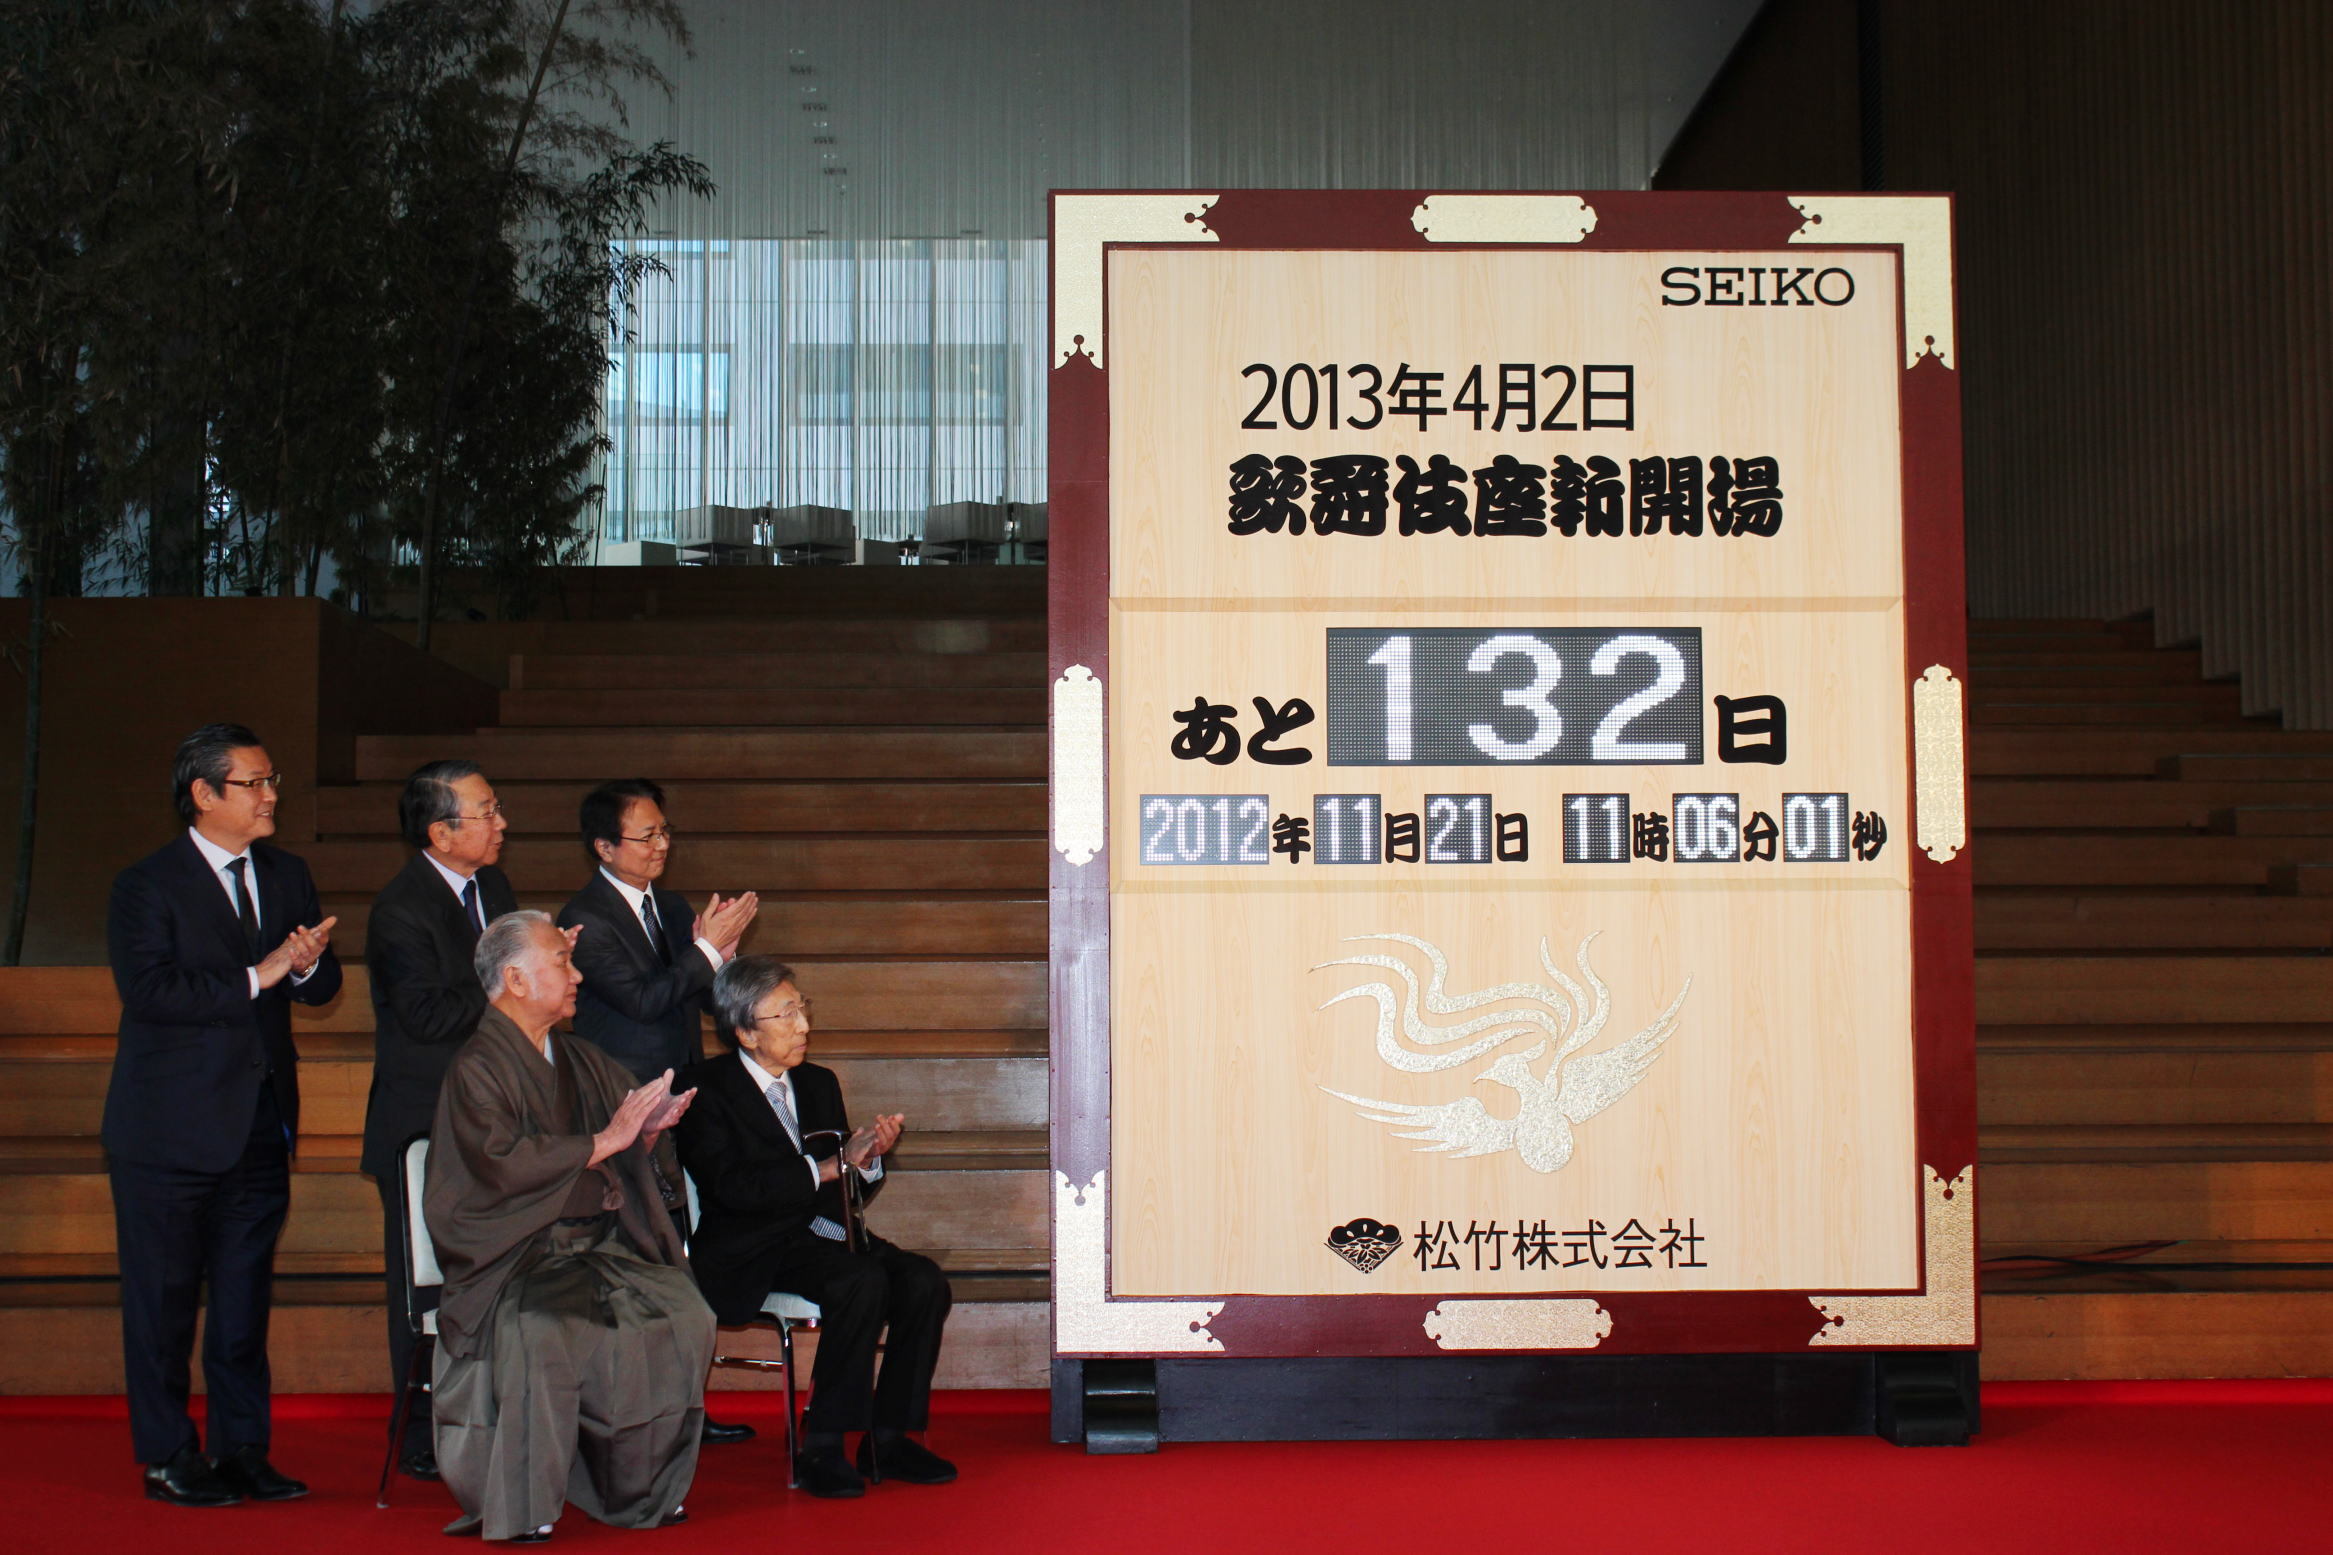 歌舞伎座新開場のカウントダウン時計が点灯 来年4月2日まで時刻む